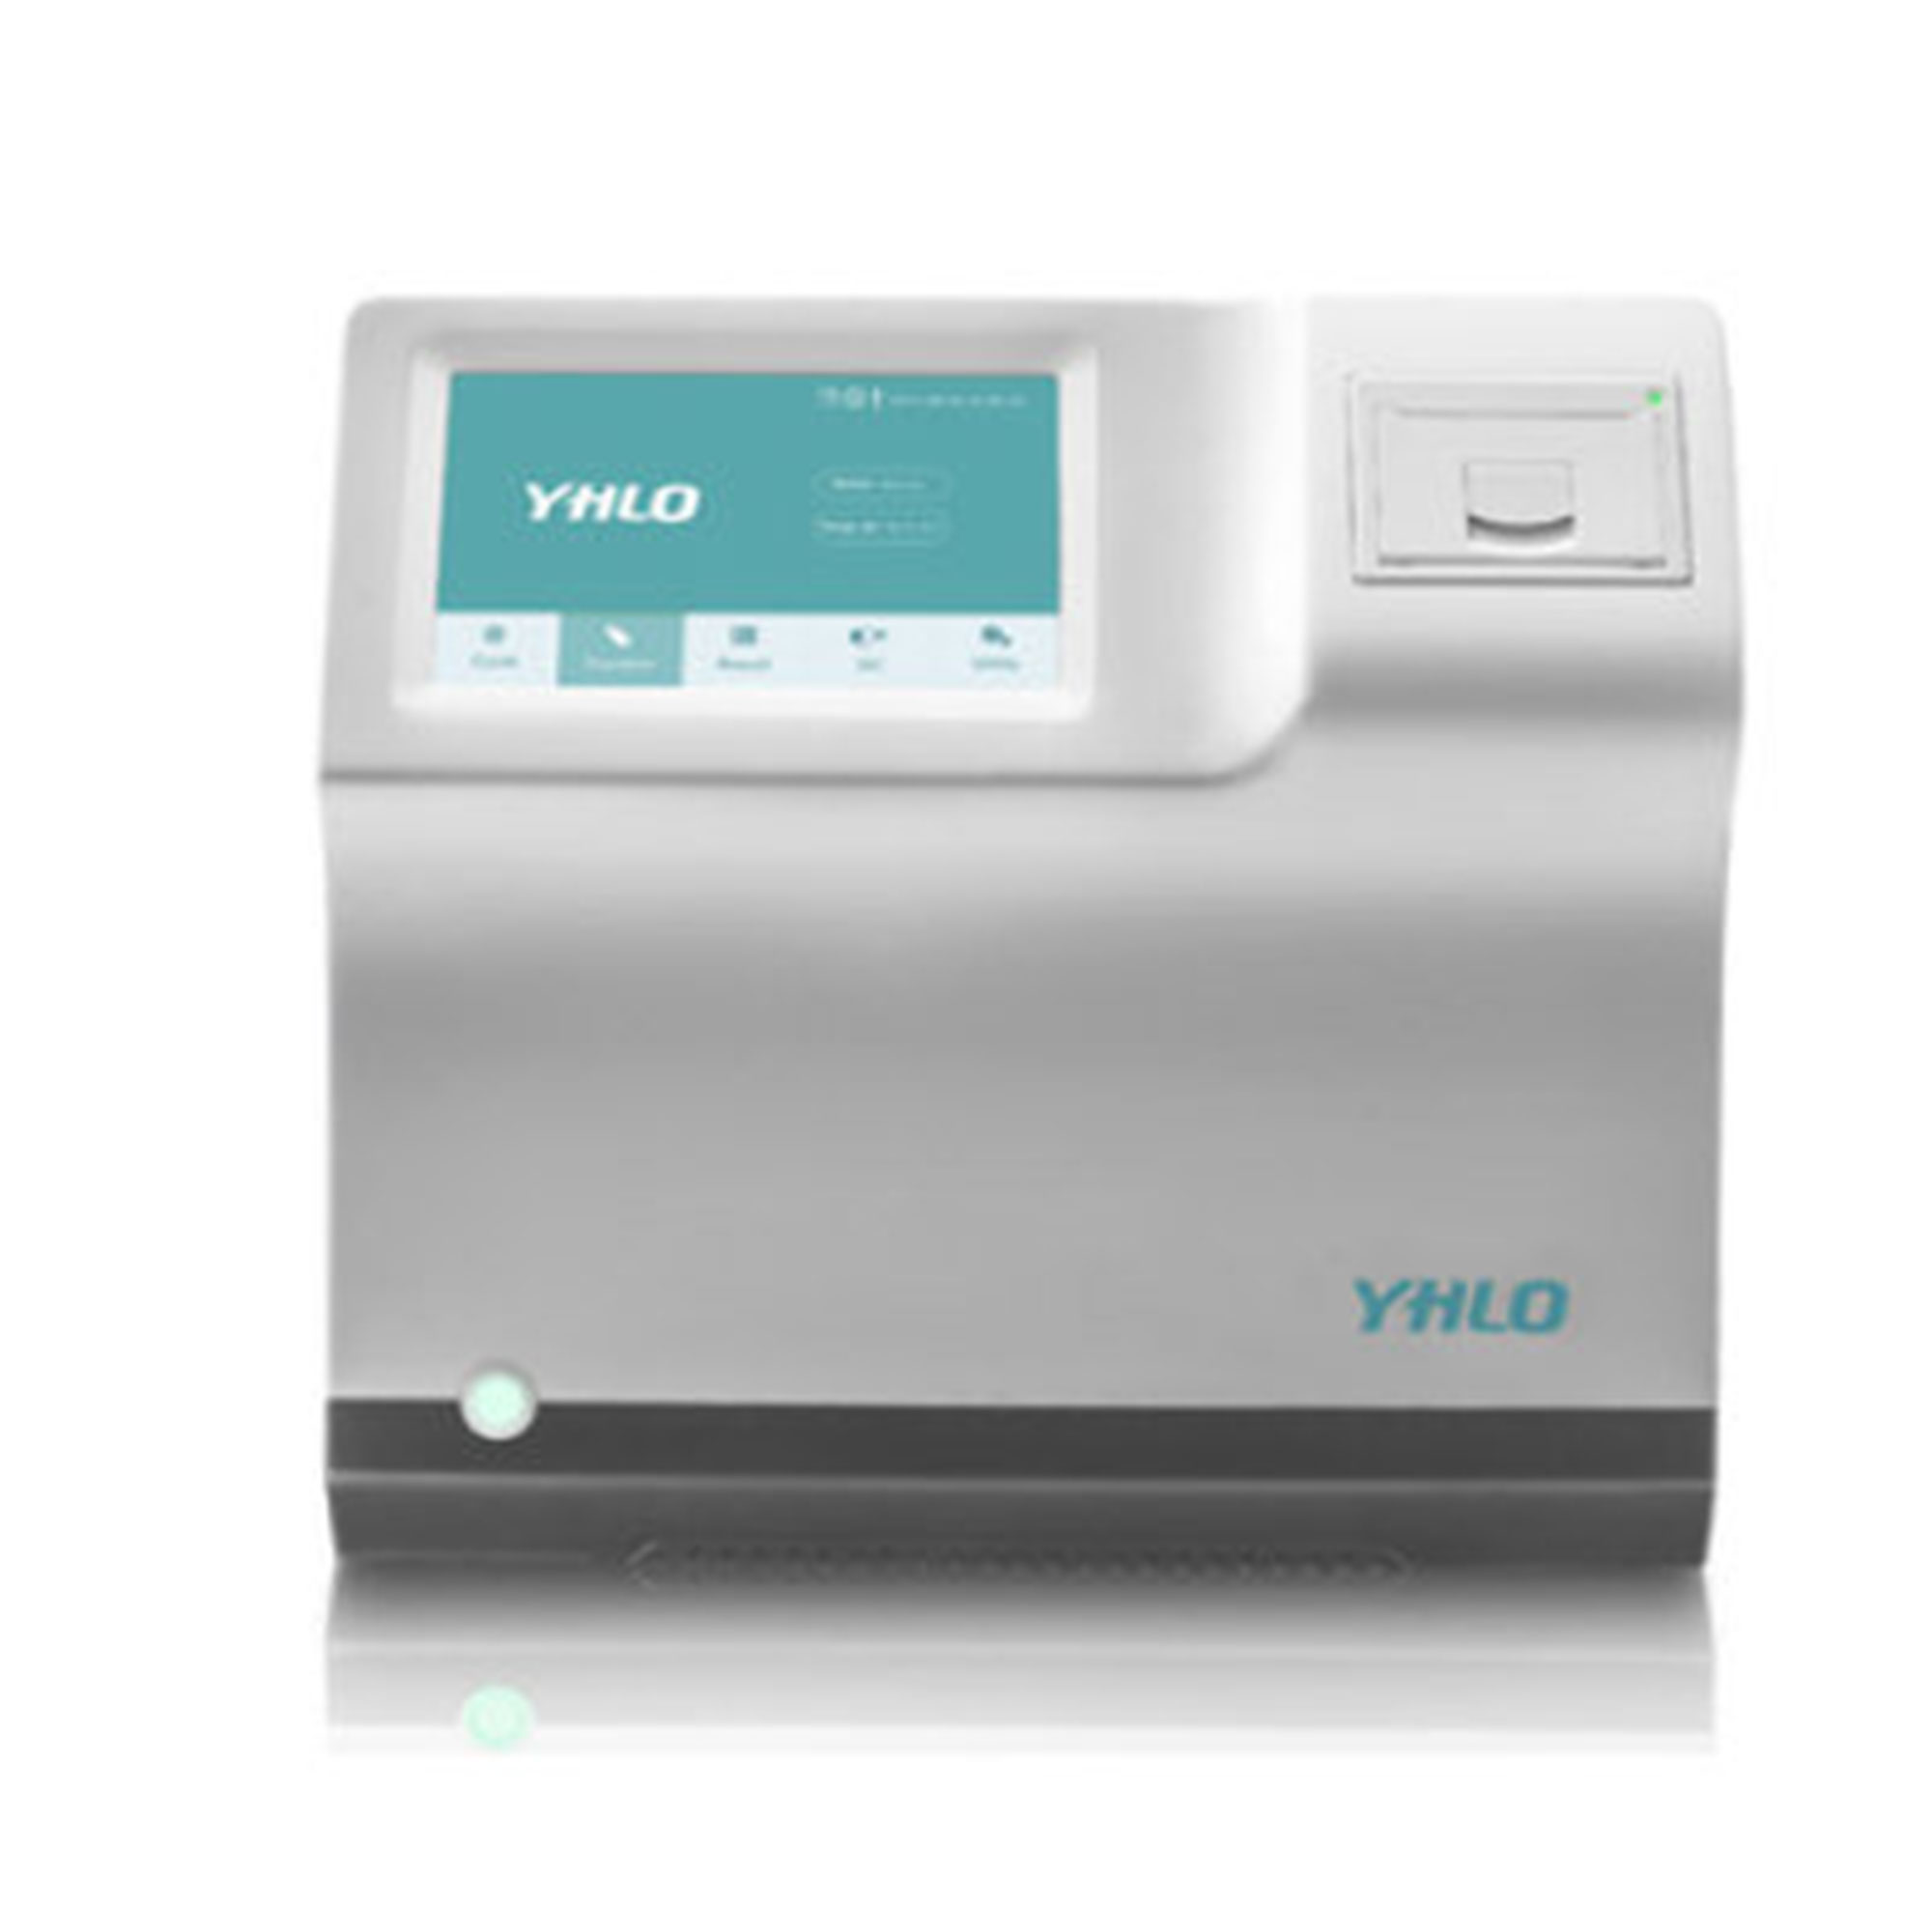 سدیمان آنالایزر 8 خانه ال سی دی دار - Vision Pro A ESR Analyzer - YHLO - دستگاه - هماتولوژی و بانک خون - گروه آزمایشگاهی پادینا ویستا